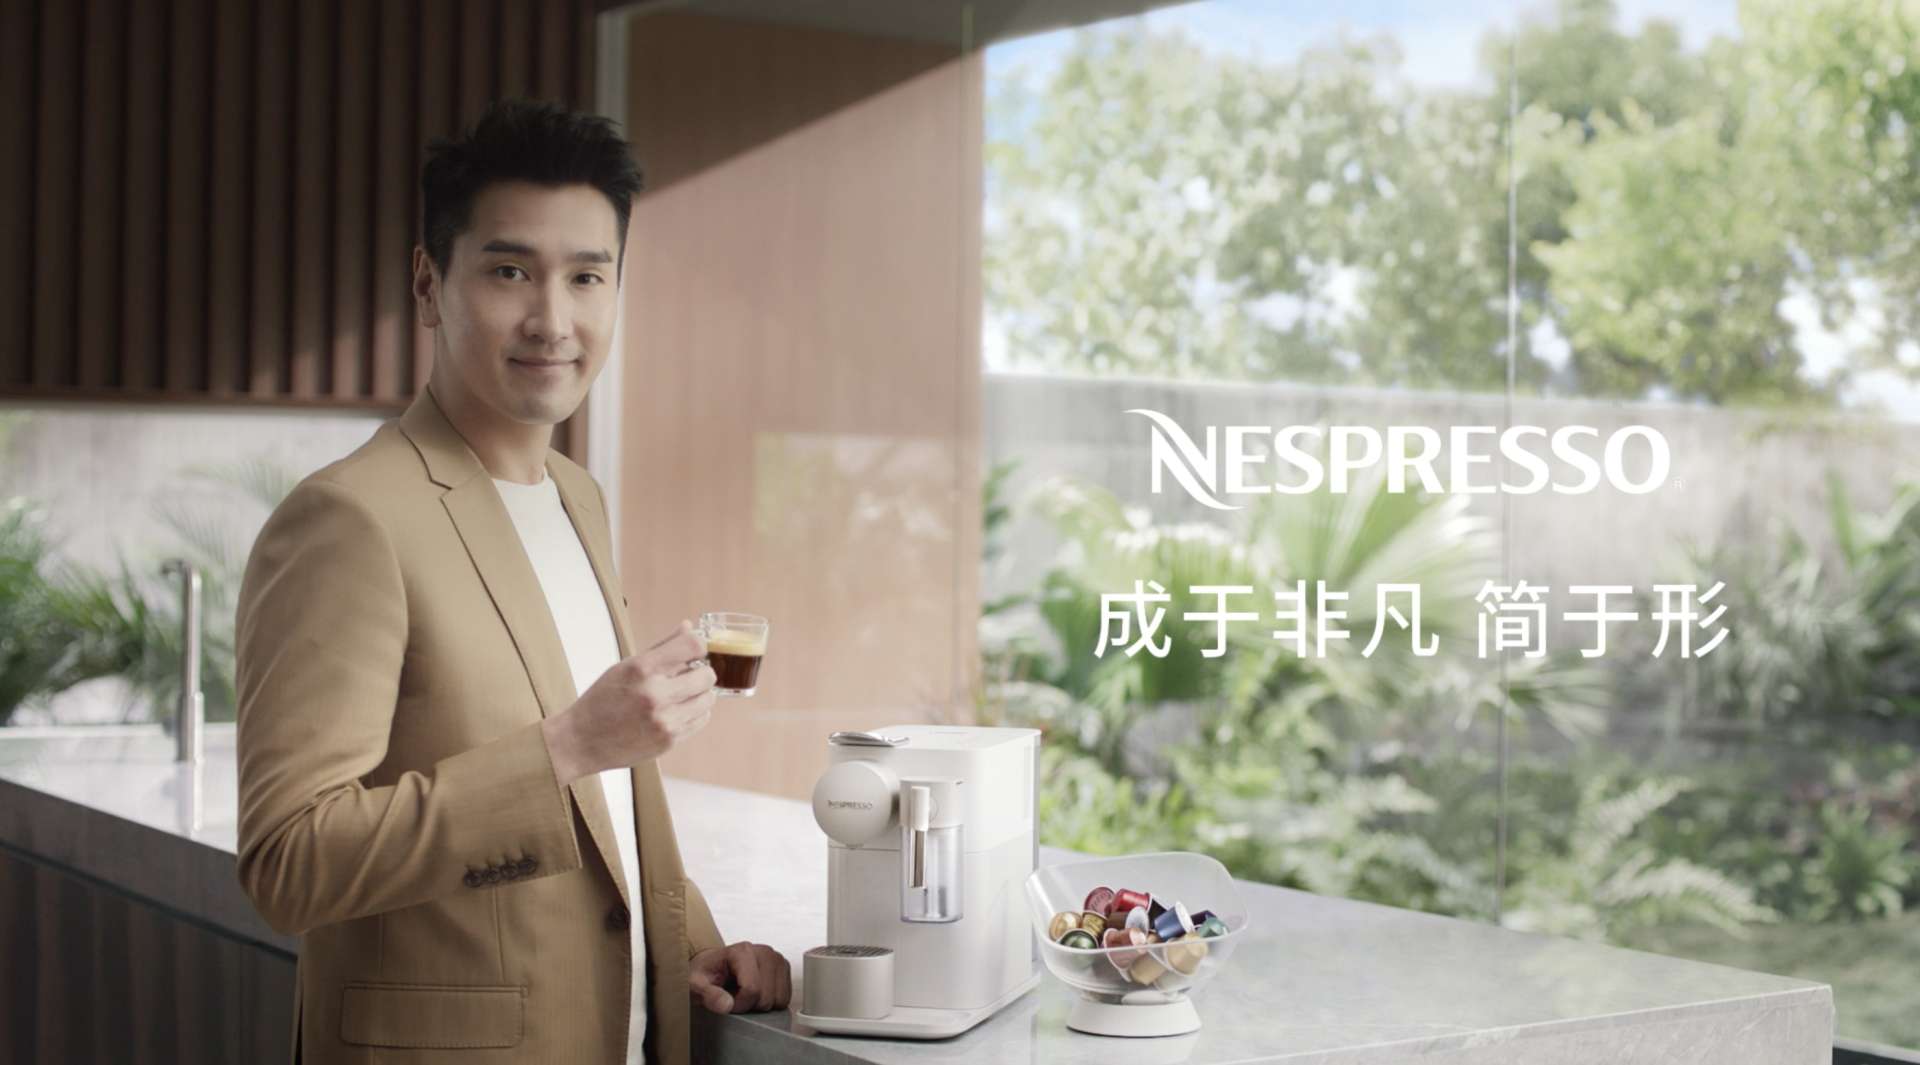 Nespresso x 赵又廷 「成于非凡 简于形」